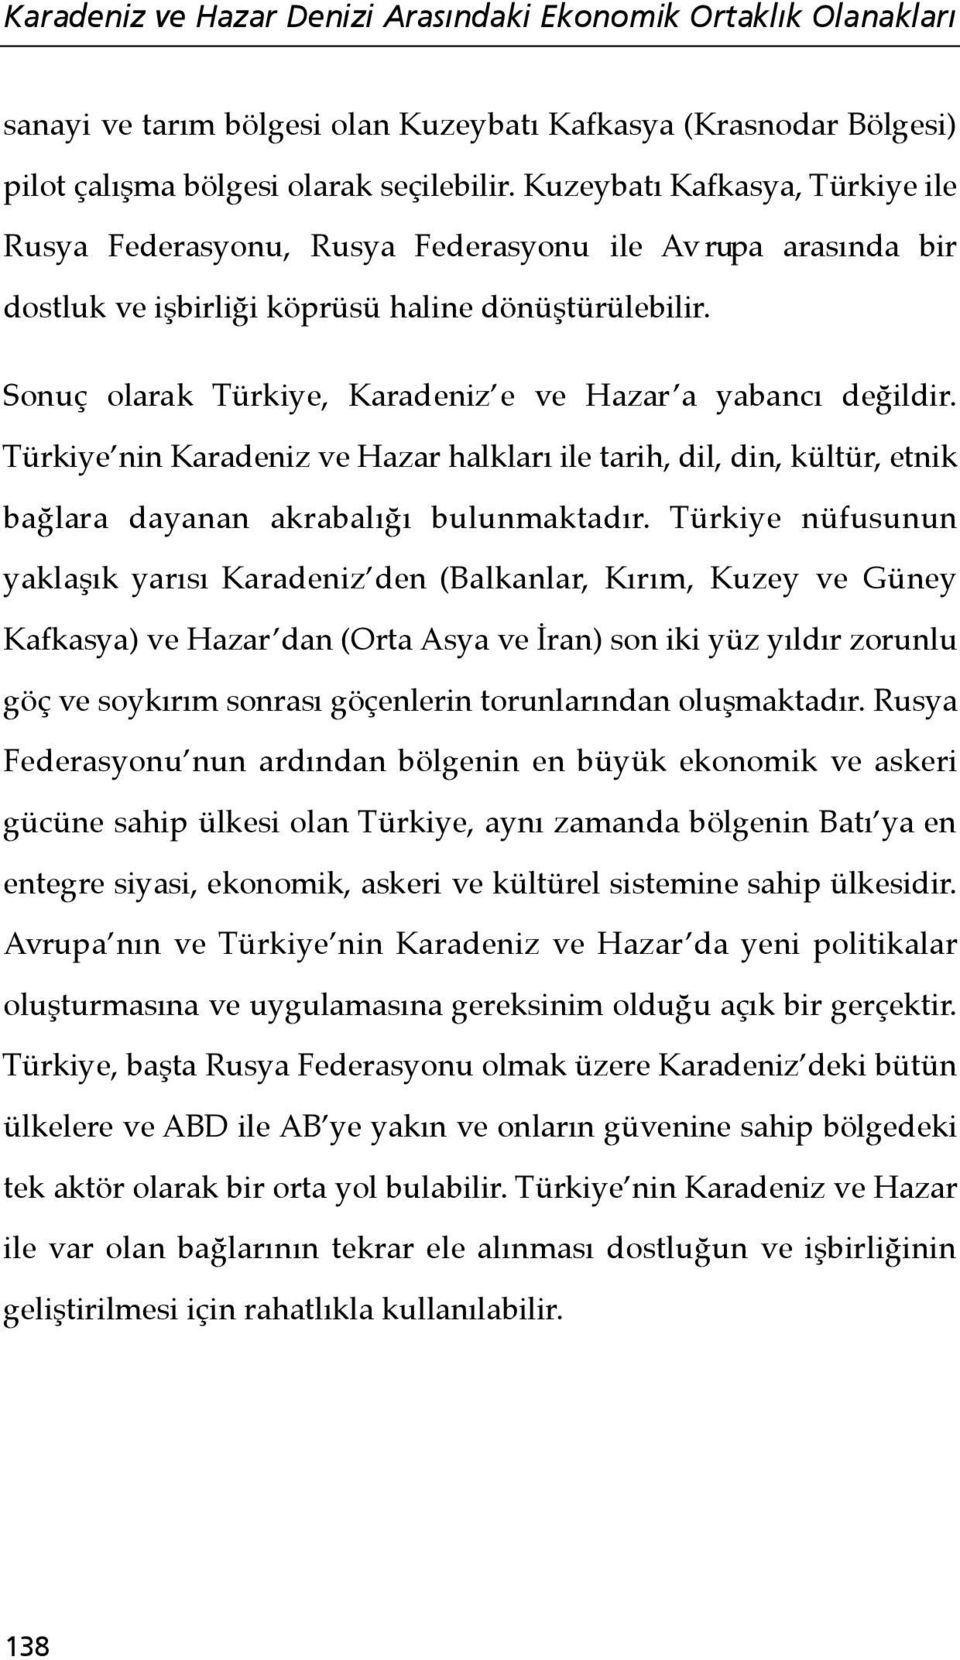 Sonuç olarak Türkiye, Karadeniz e ve Hazar a yabancı değildir. Türkiye nin Karadeniz ve Hazar halkları ile tarih, dil, din, kültür, etnik bağlara dayanan akrabalığı bulunmaktadır.